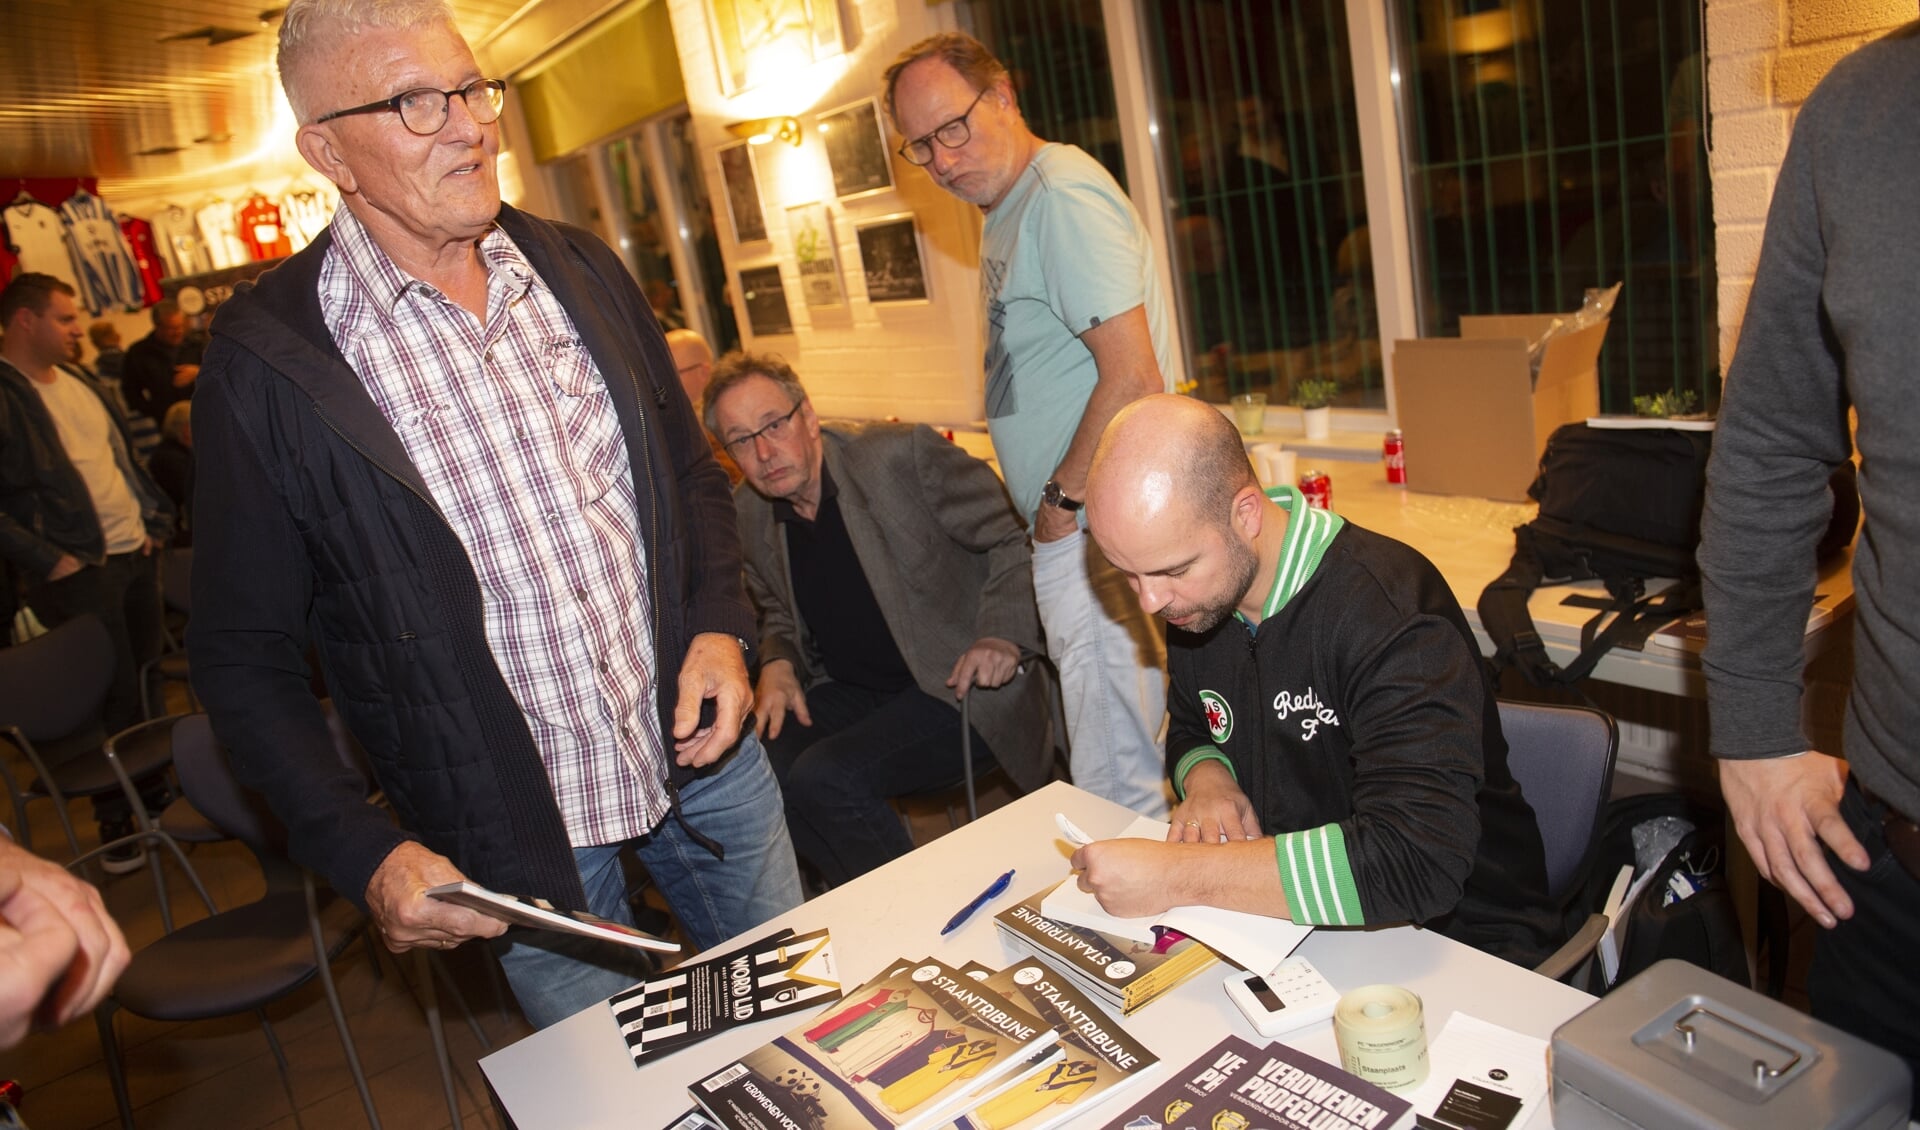 Martijn Schwillens signeert zijn boek tijdens de boekpresentatie op De Wageningse Berg.